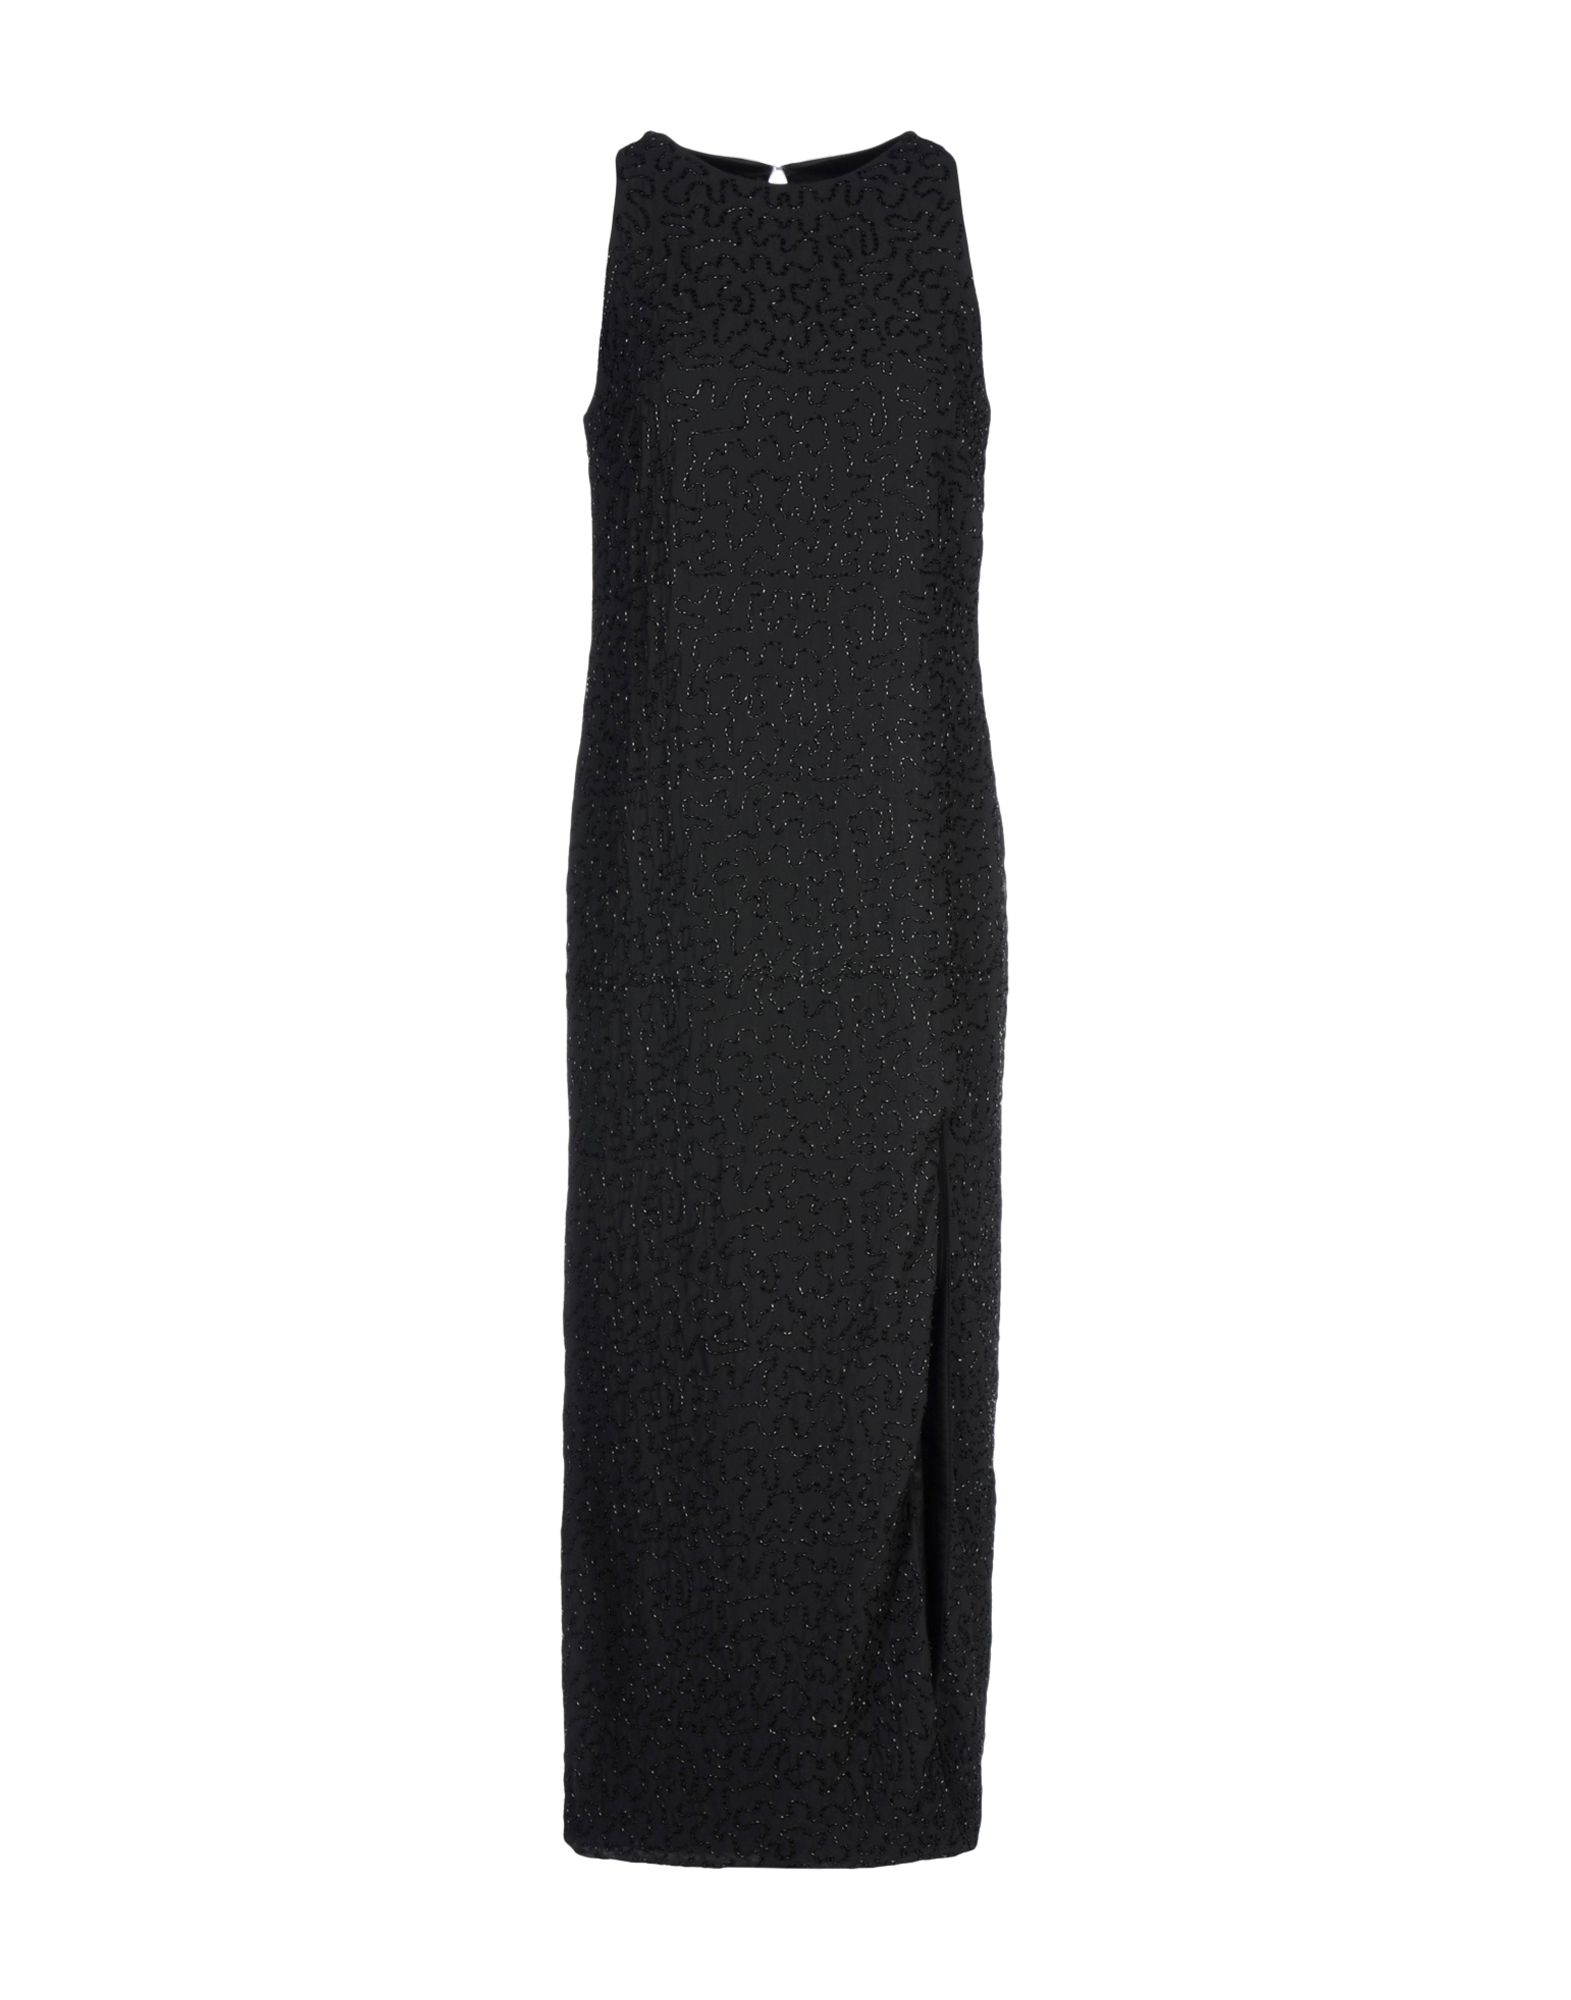 MY SECRET BLACK DRESS Платье длиной 3/4